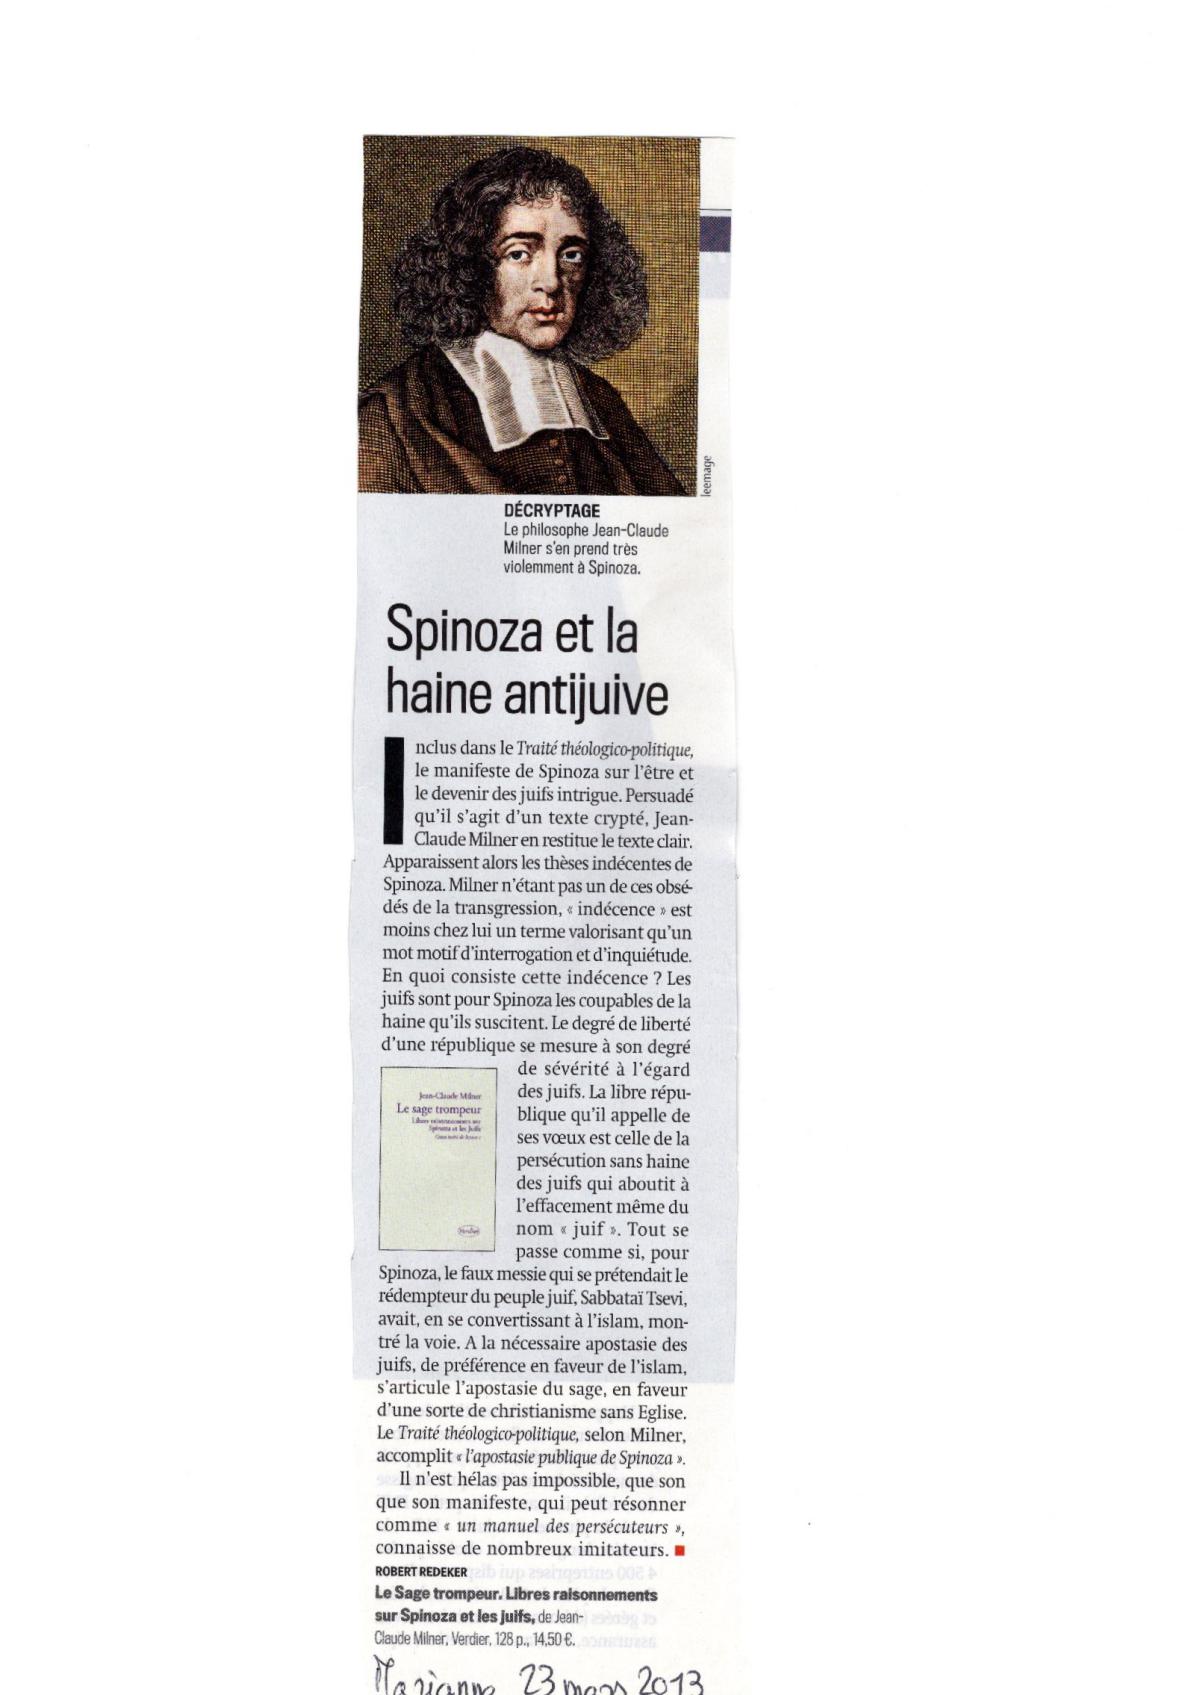 Spinoza et la haine antijuive. Le Sage trompeur? 